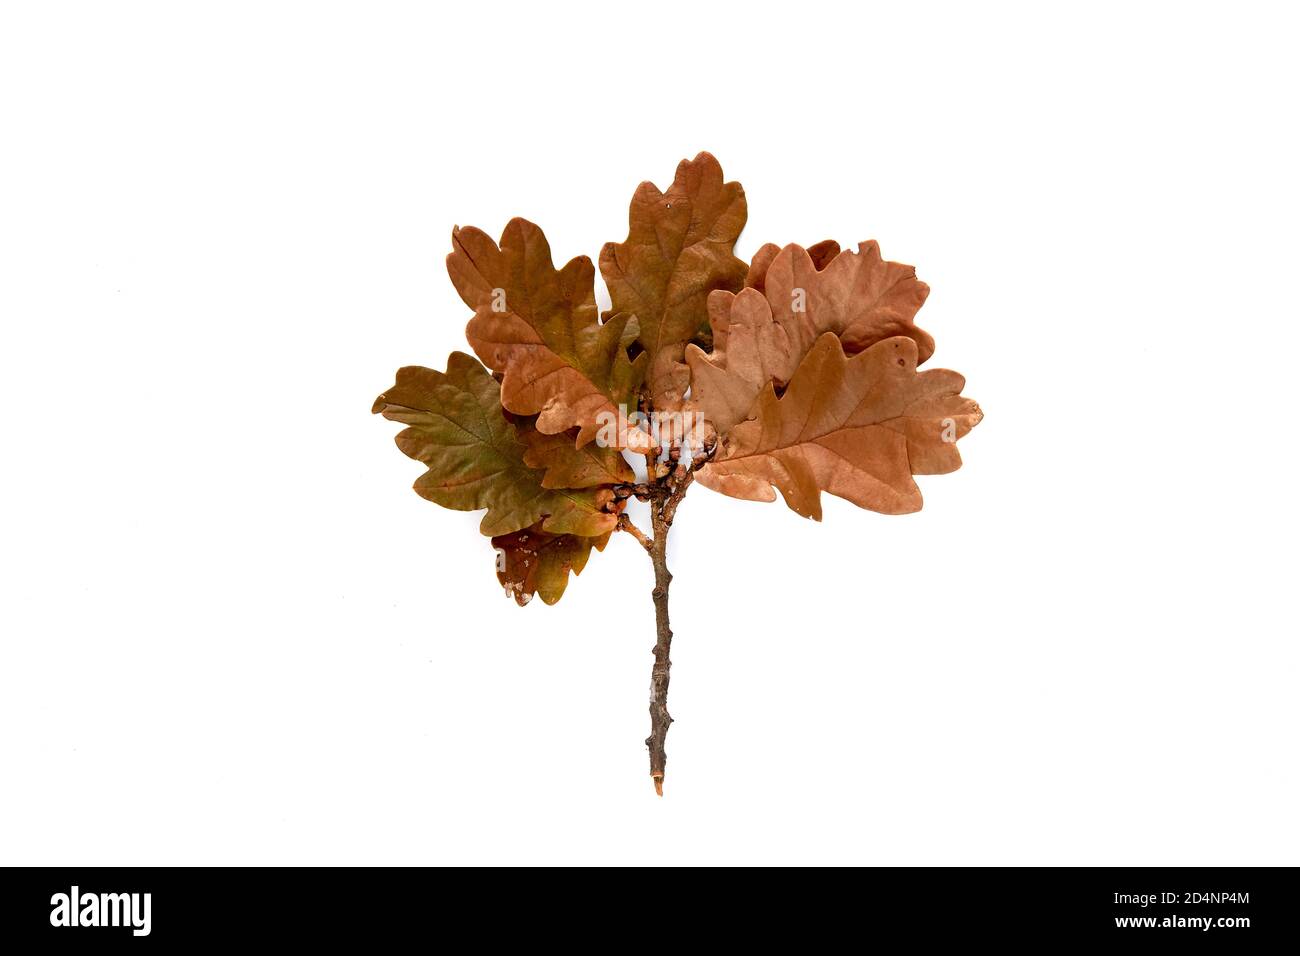 Herbst braun Zweig der Eiche Blatt isoliert auf weißem Hintergrund. Vorlage mockup Herbst, halloween, Ernte Danksagung Konzept. Flach liegend, Draufsicht, Kopie Stockfoto